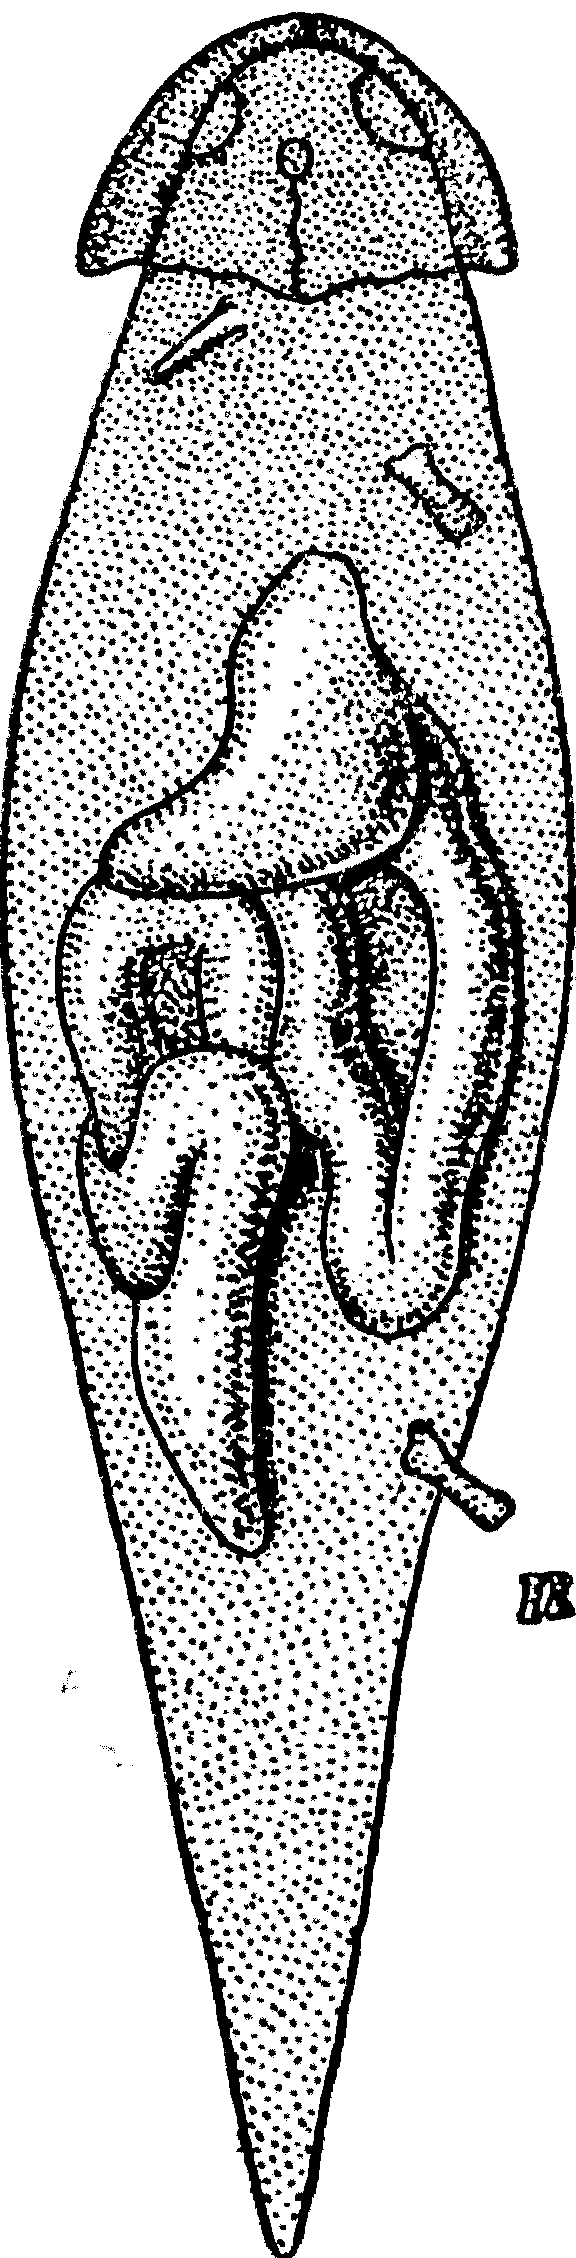 Рис. 2. Личинка бранхиозавра с сохранившимся отпечатком мягких частей тела, кишечником и желудком. Верхний карбон Мэзон-Крик, США. × 2.